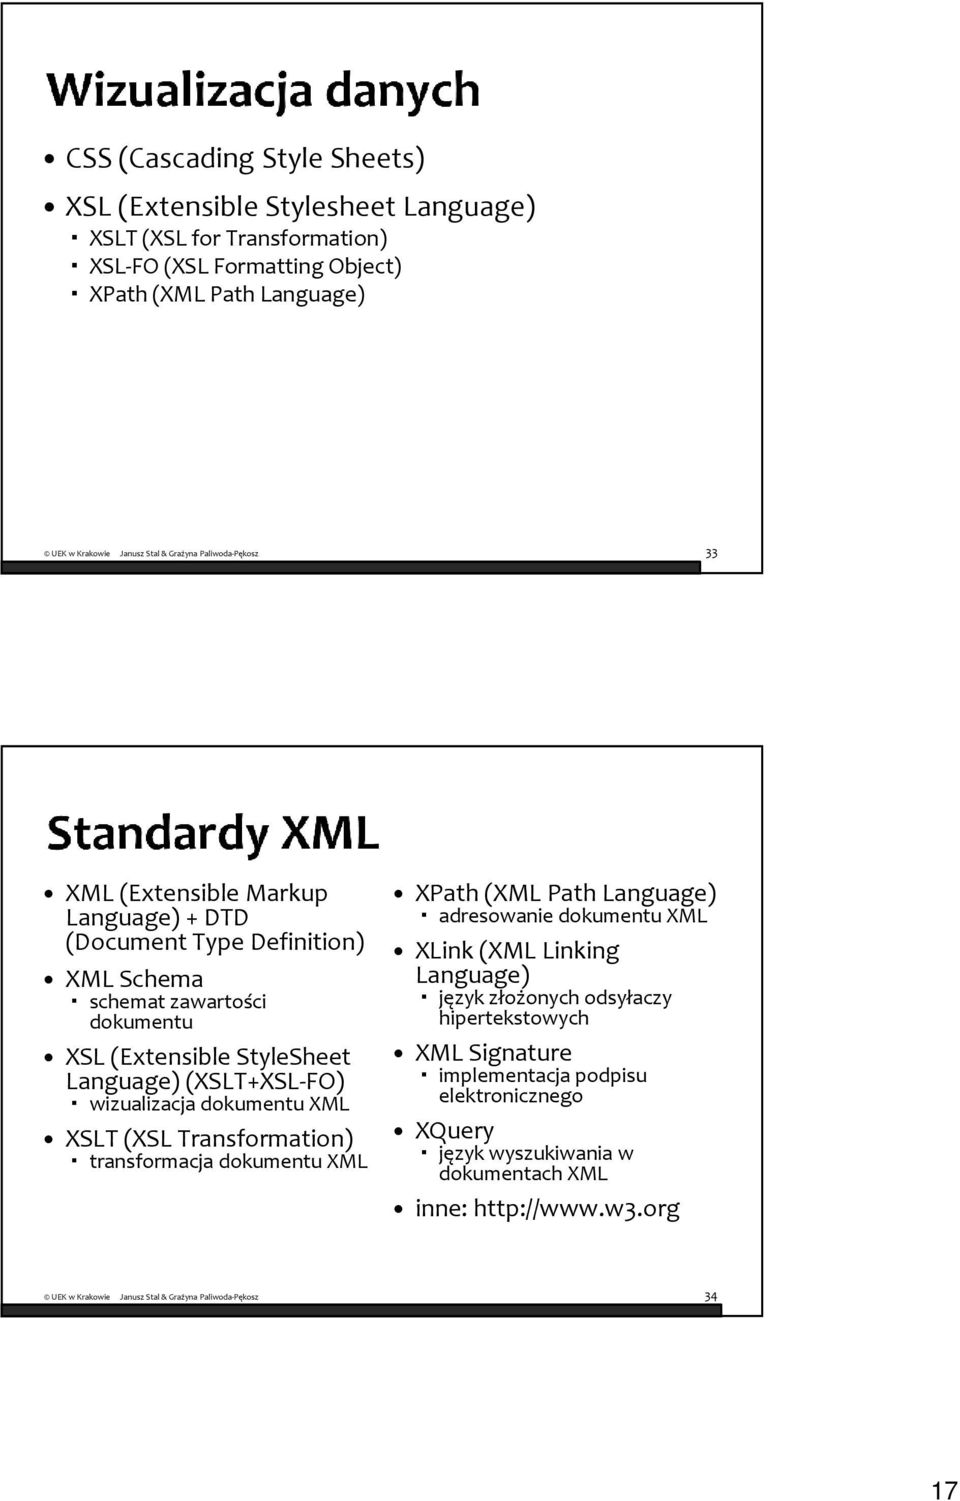 wizualizacja dokumentu XML XSLT (XSL Transformation) transformacja dokumentu XML XPath (XML Path Language) adresowanie dokumentu XML XLink (XML Linking